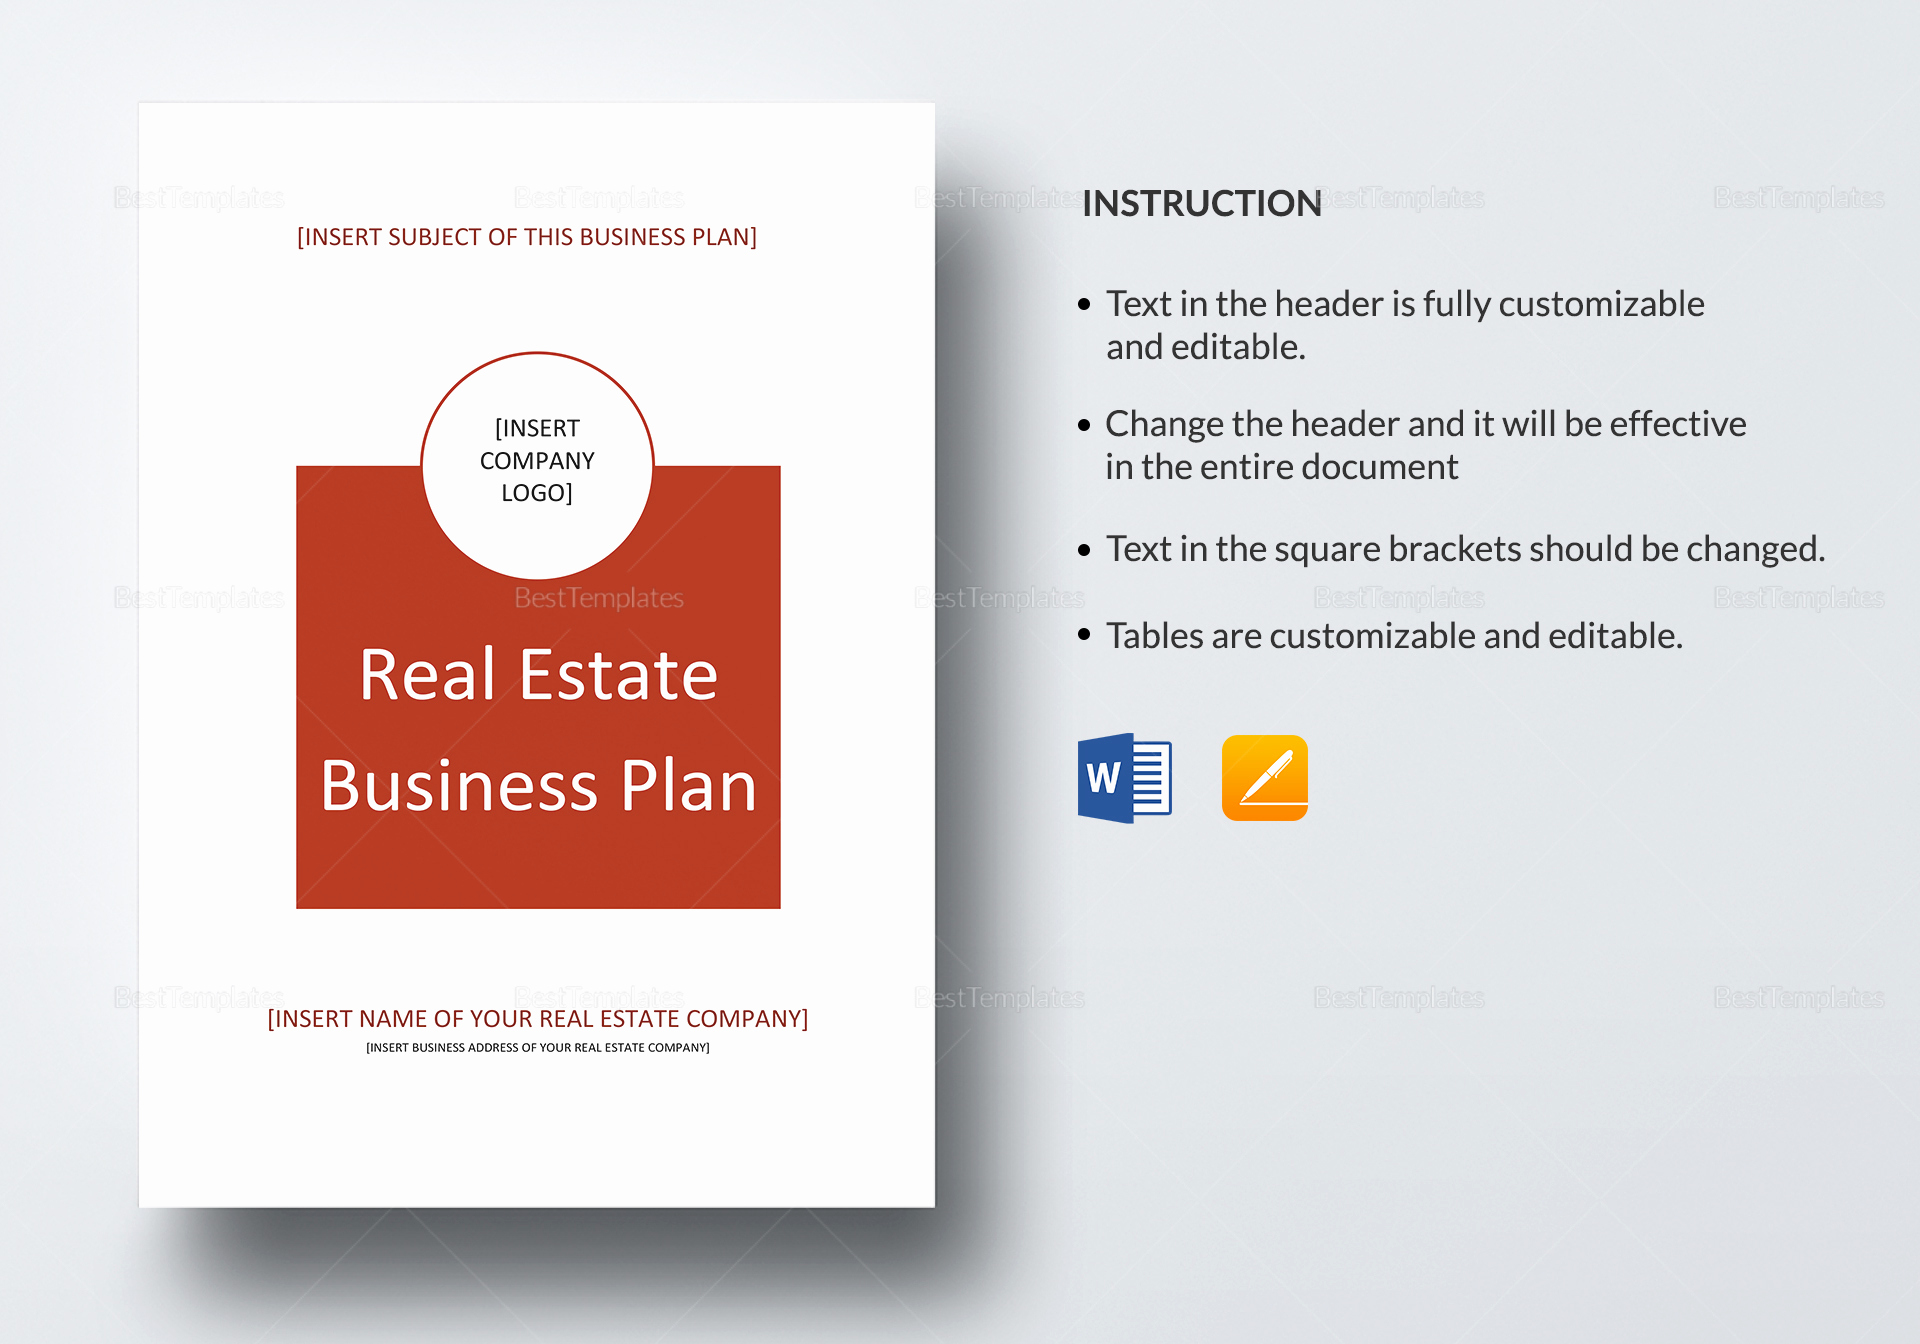 Business Plan Template Google Docs Inspirational Real Estate Business Plan Template In Word Google Docs